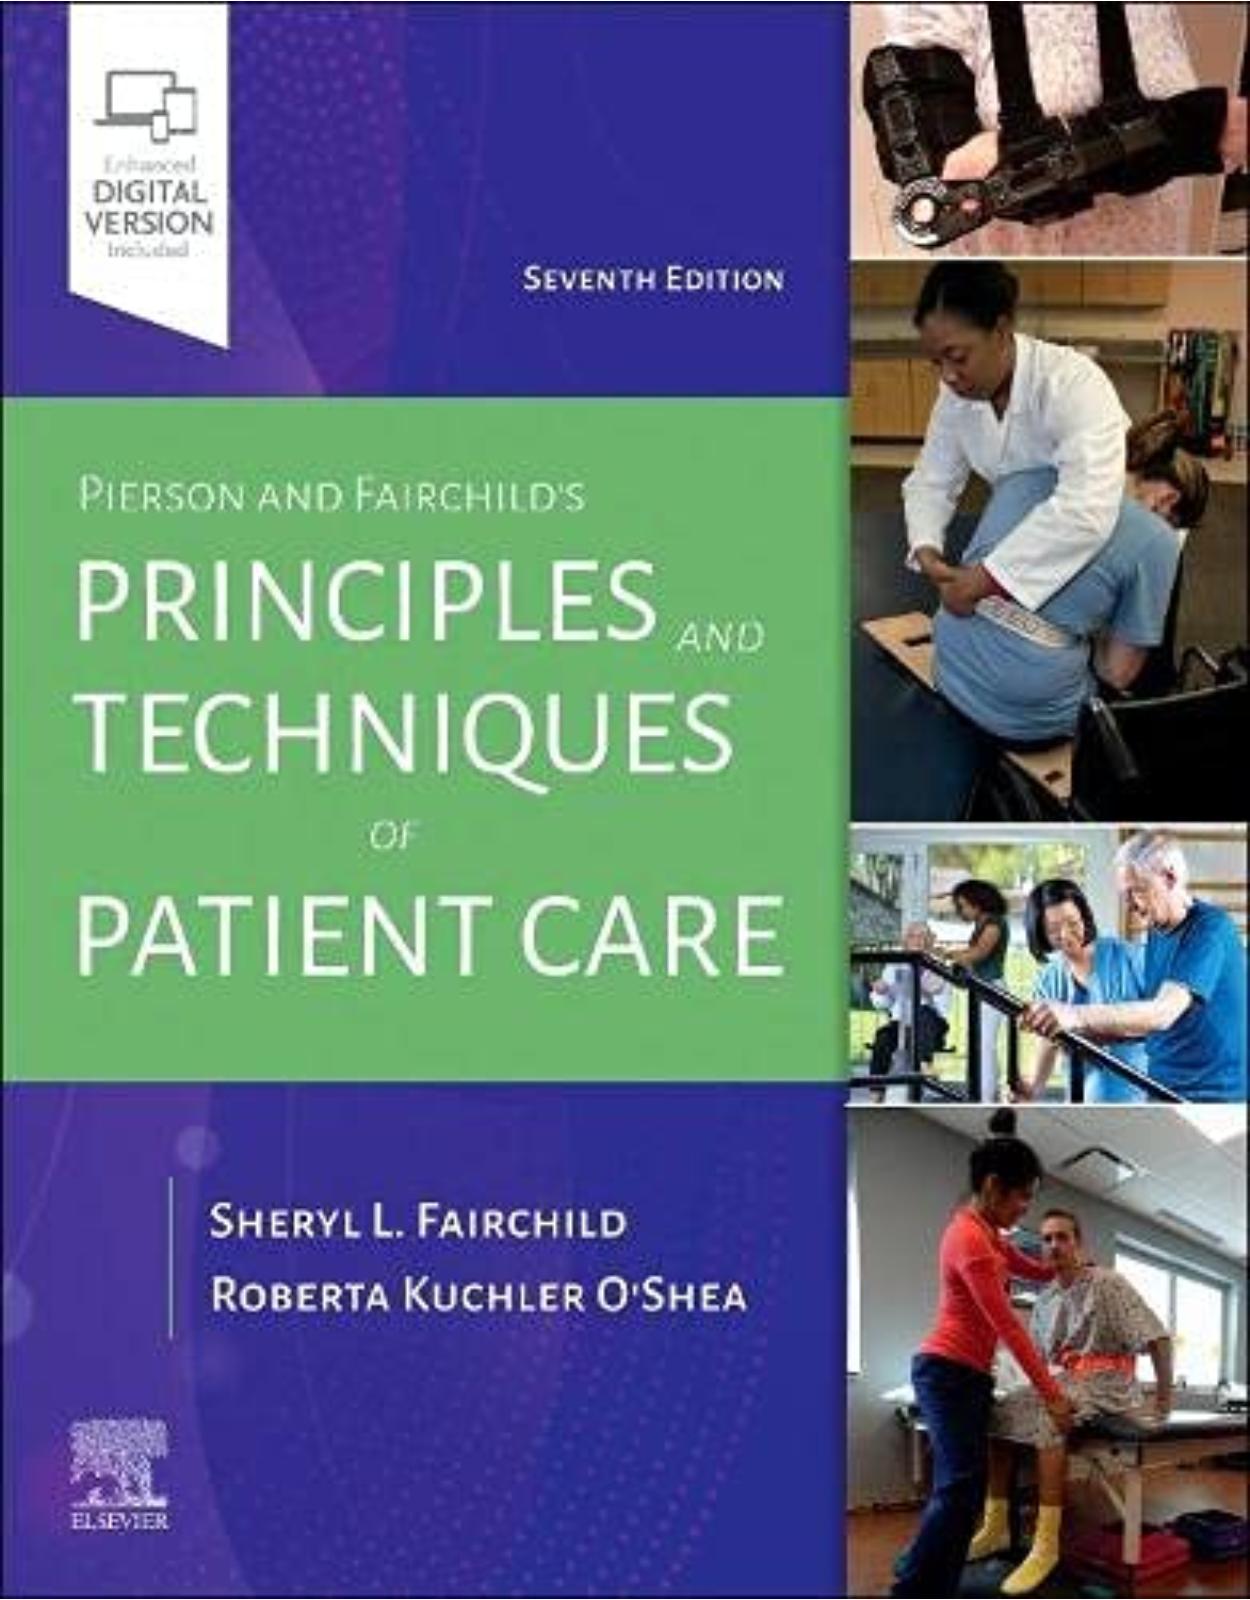 Pierson and Fairchild’s Principles & Techniques of Patient Care